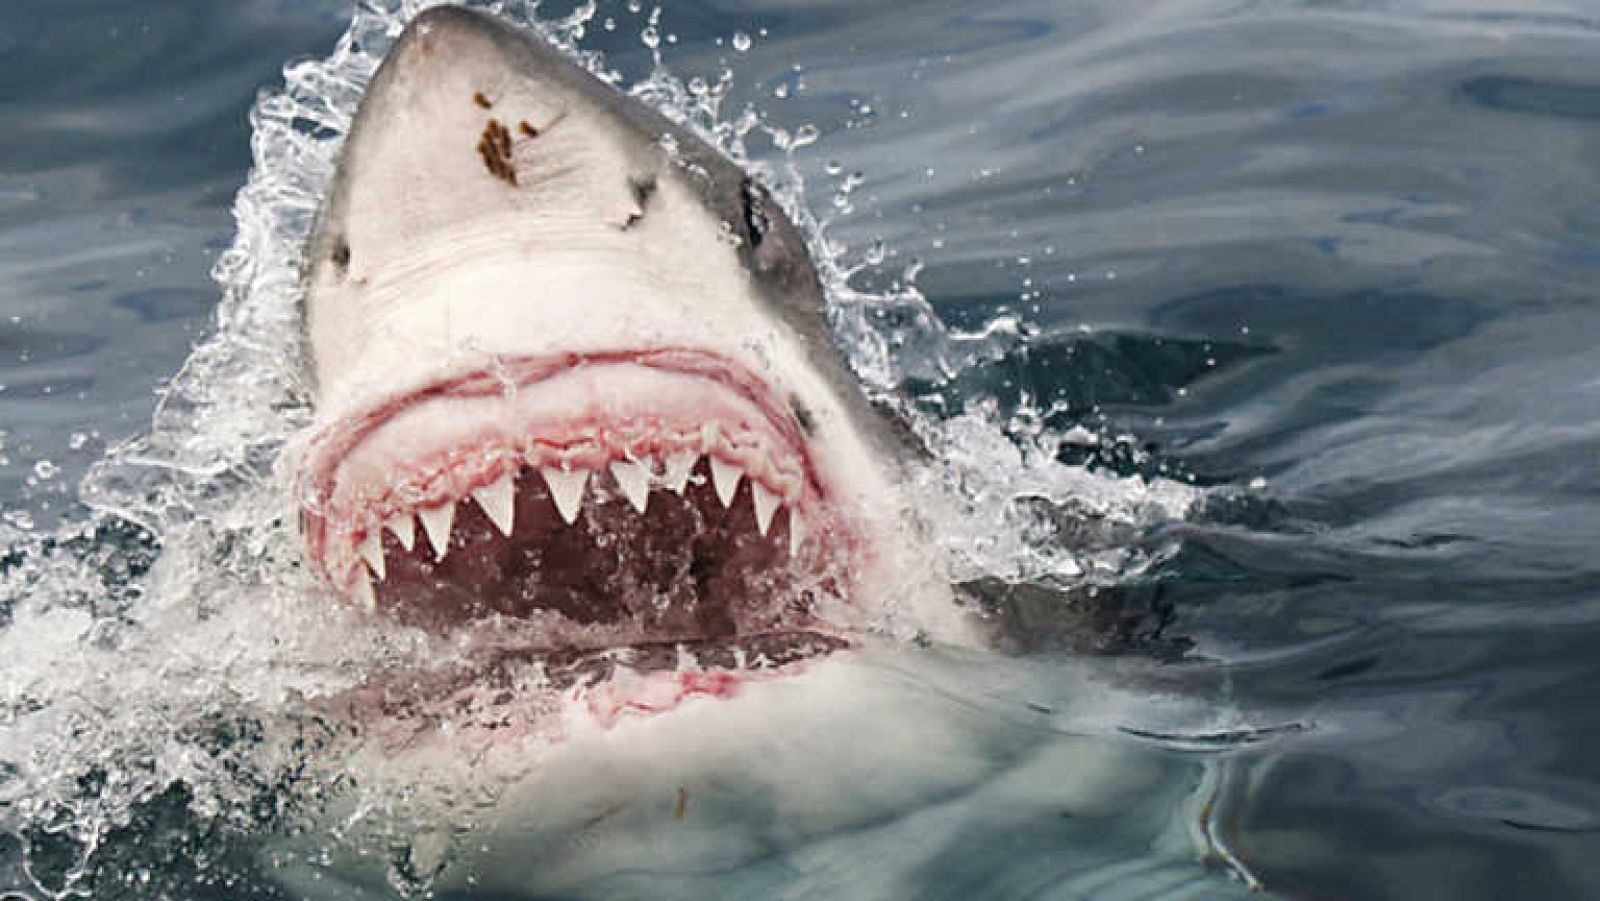 Grandes documentales - Tiburón blanco en el triángulo rojo